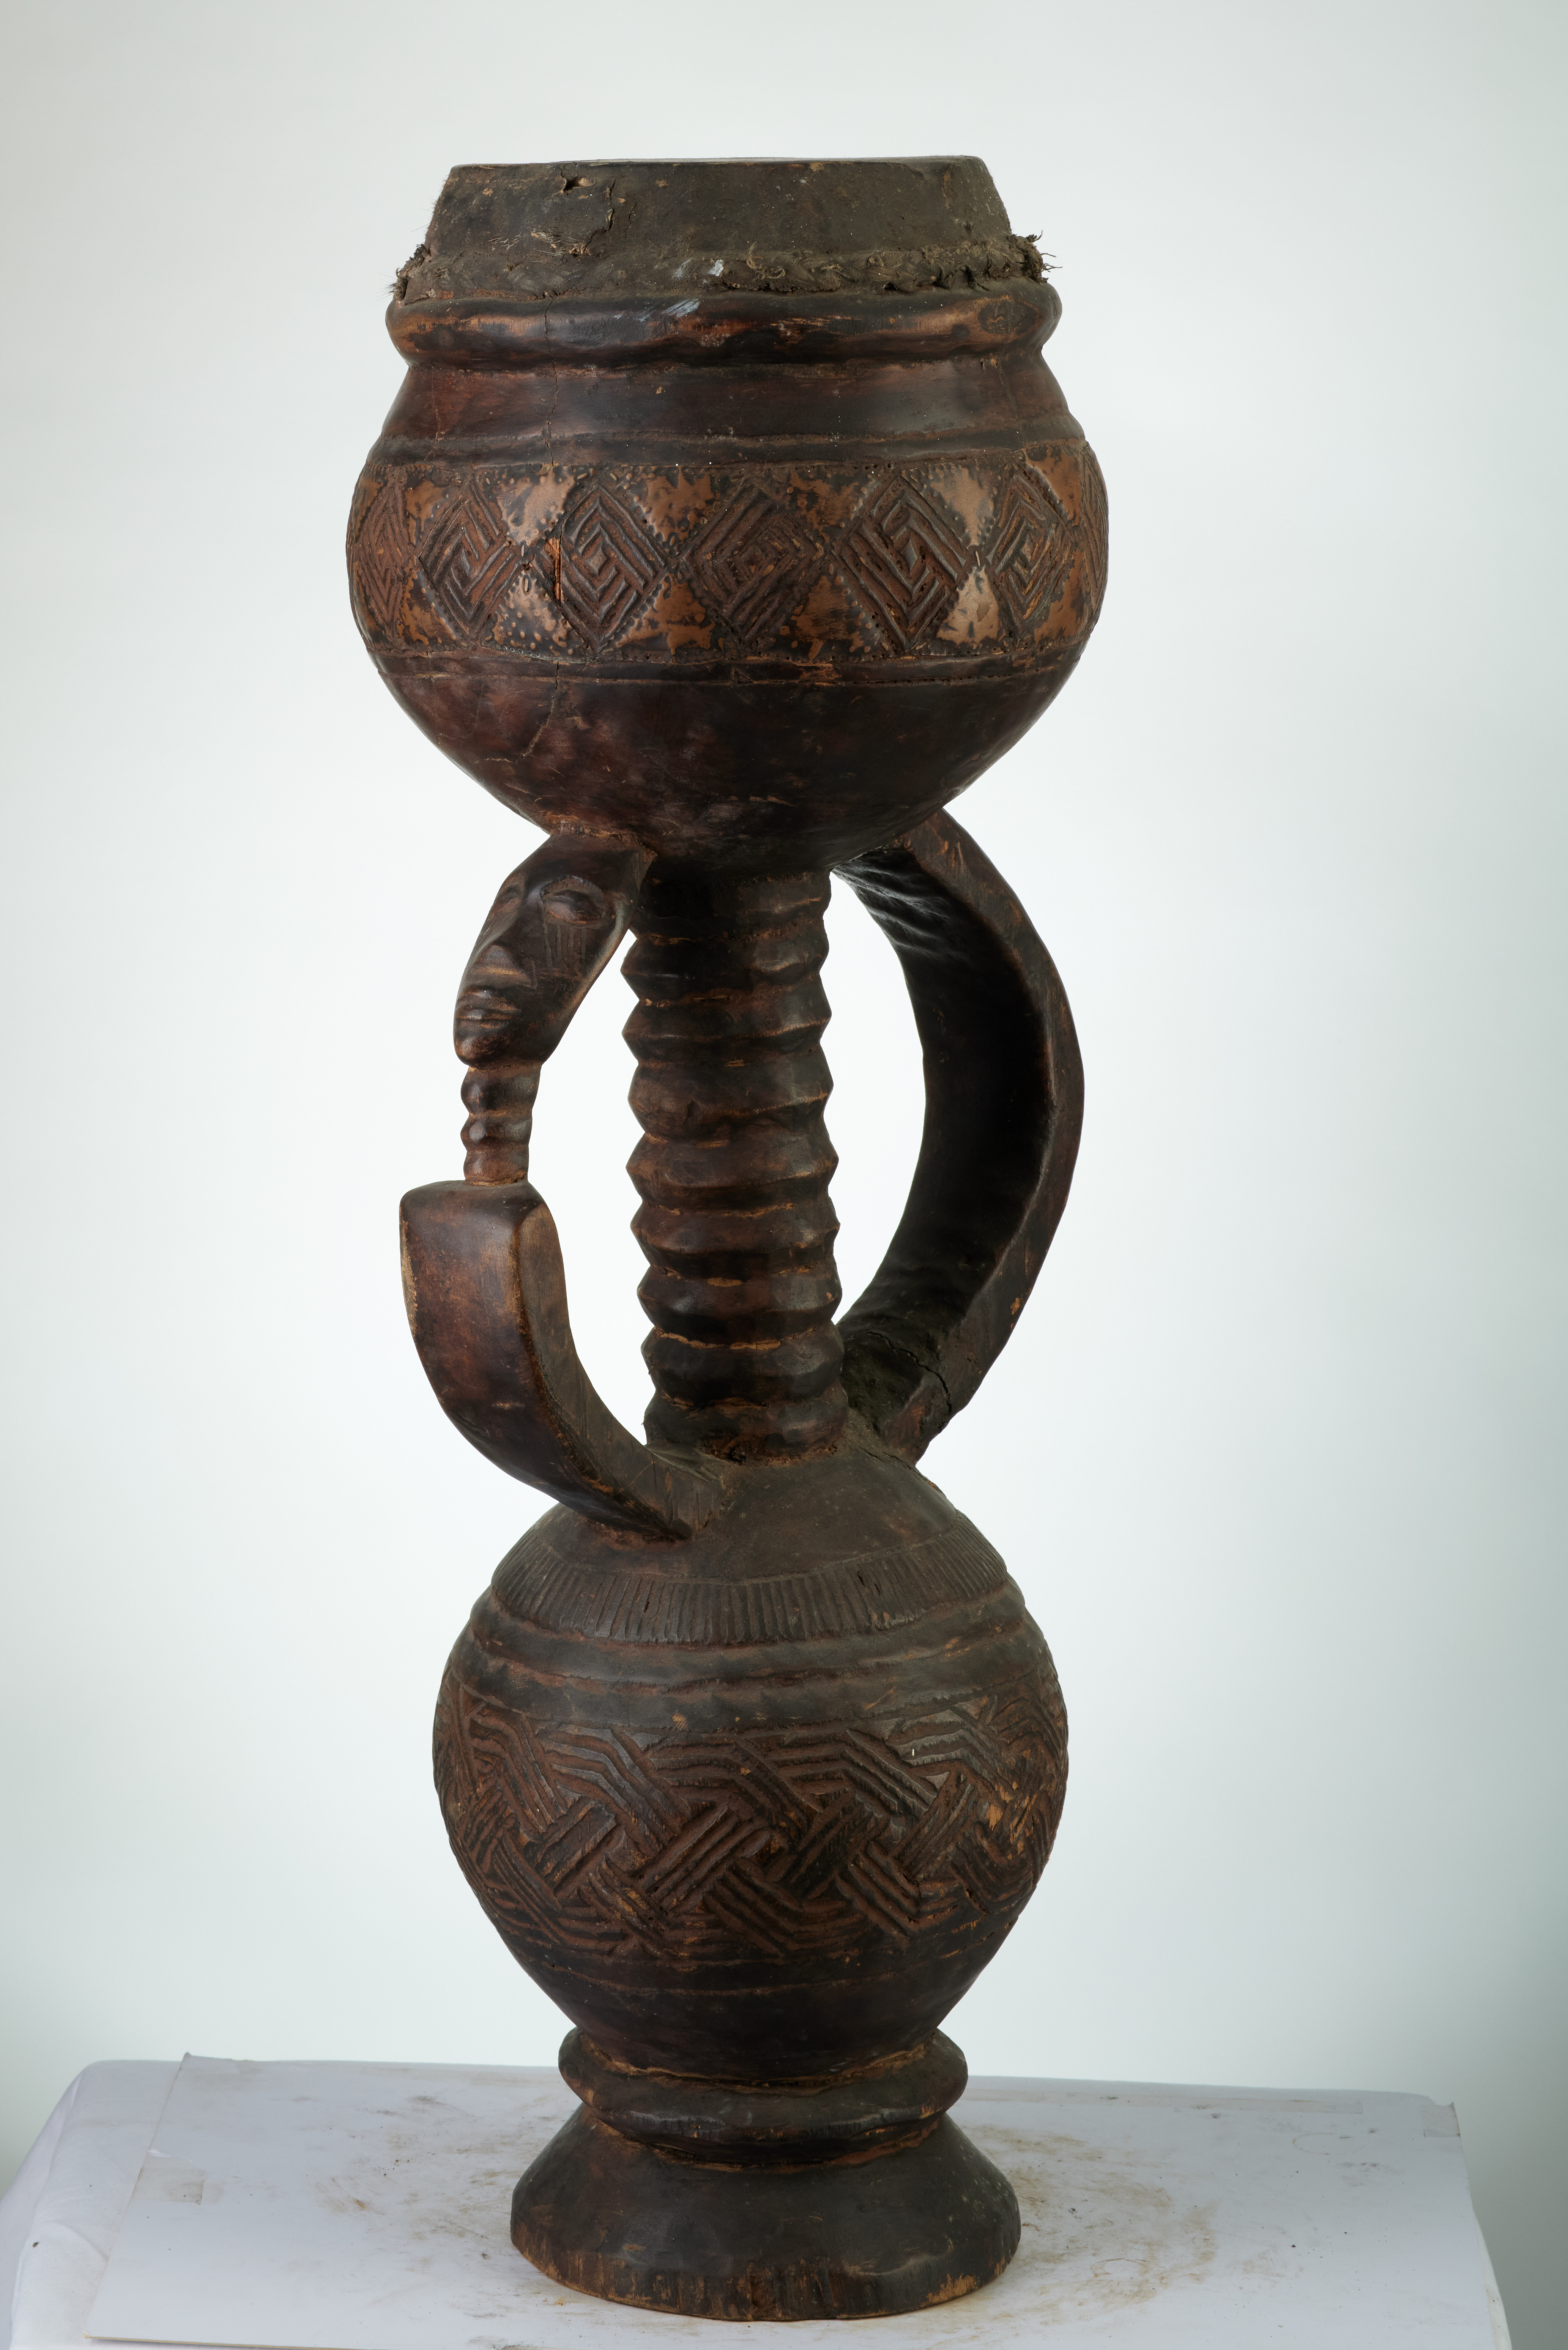 KUBA (tambour bukita), d`afrique : rep.dem.Congo, statuette KUBA (tambour bukita), masque ancien africain KUBA (tambour bukita), art du rep.dem.Congo - Art Africain, collection privées Belgique. Statue africaine de la tribu des KUBA (tambour bukita), provenant du rep.dem.Congo, 1830:Très rare Tambour Bukita à deux sphères séparés par trois supports dont un sculpté avec une tête.Les sphères sont décorés de losanges.Celle de dessus  est décoré de triangles en cuivre.Sous-style SHOOWA Localité de Tulumbu ,zone de Mweka. Ces tambours  n